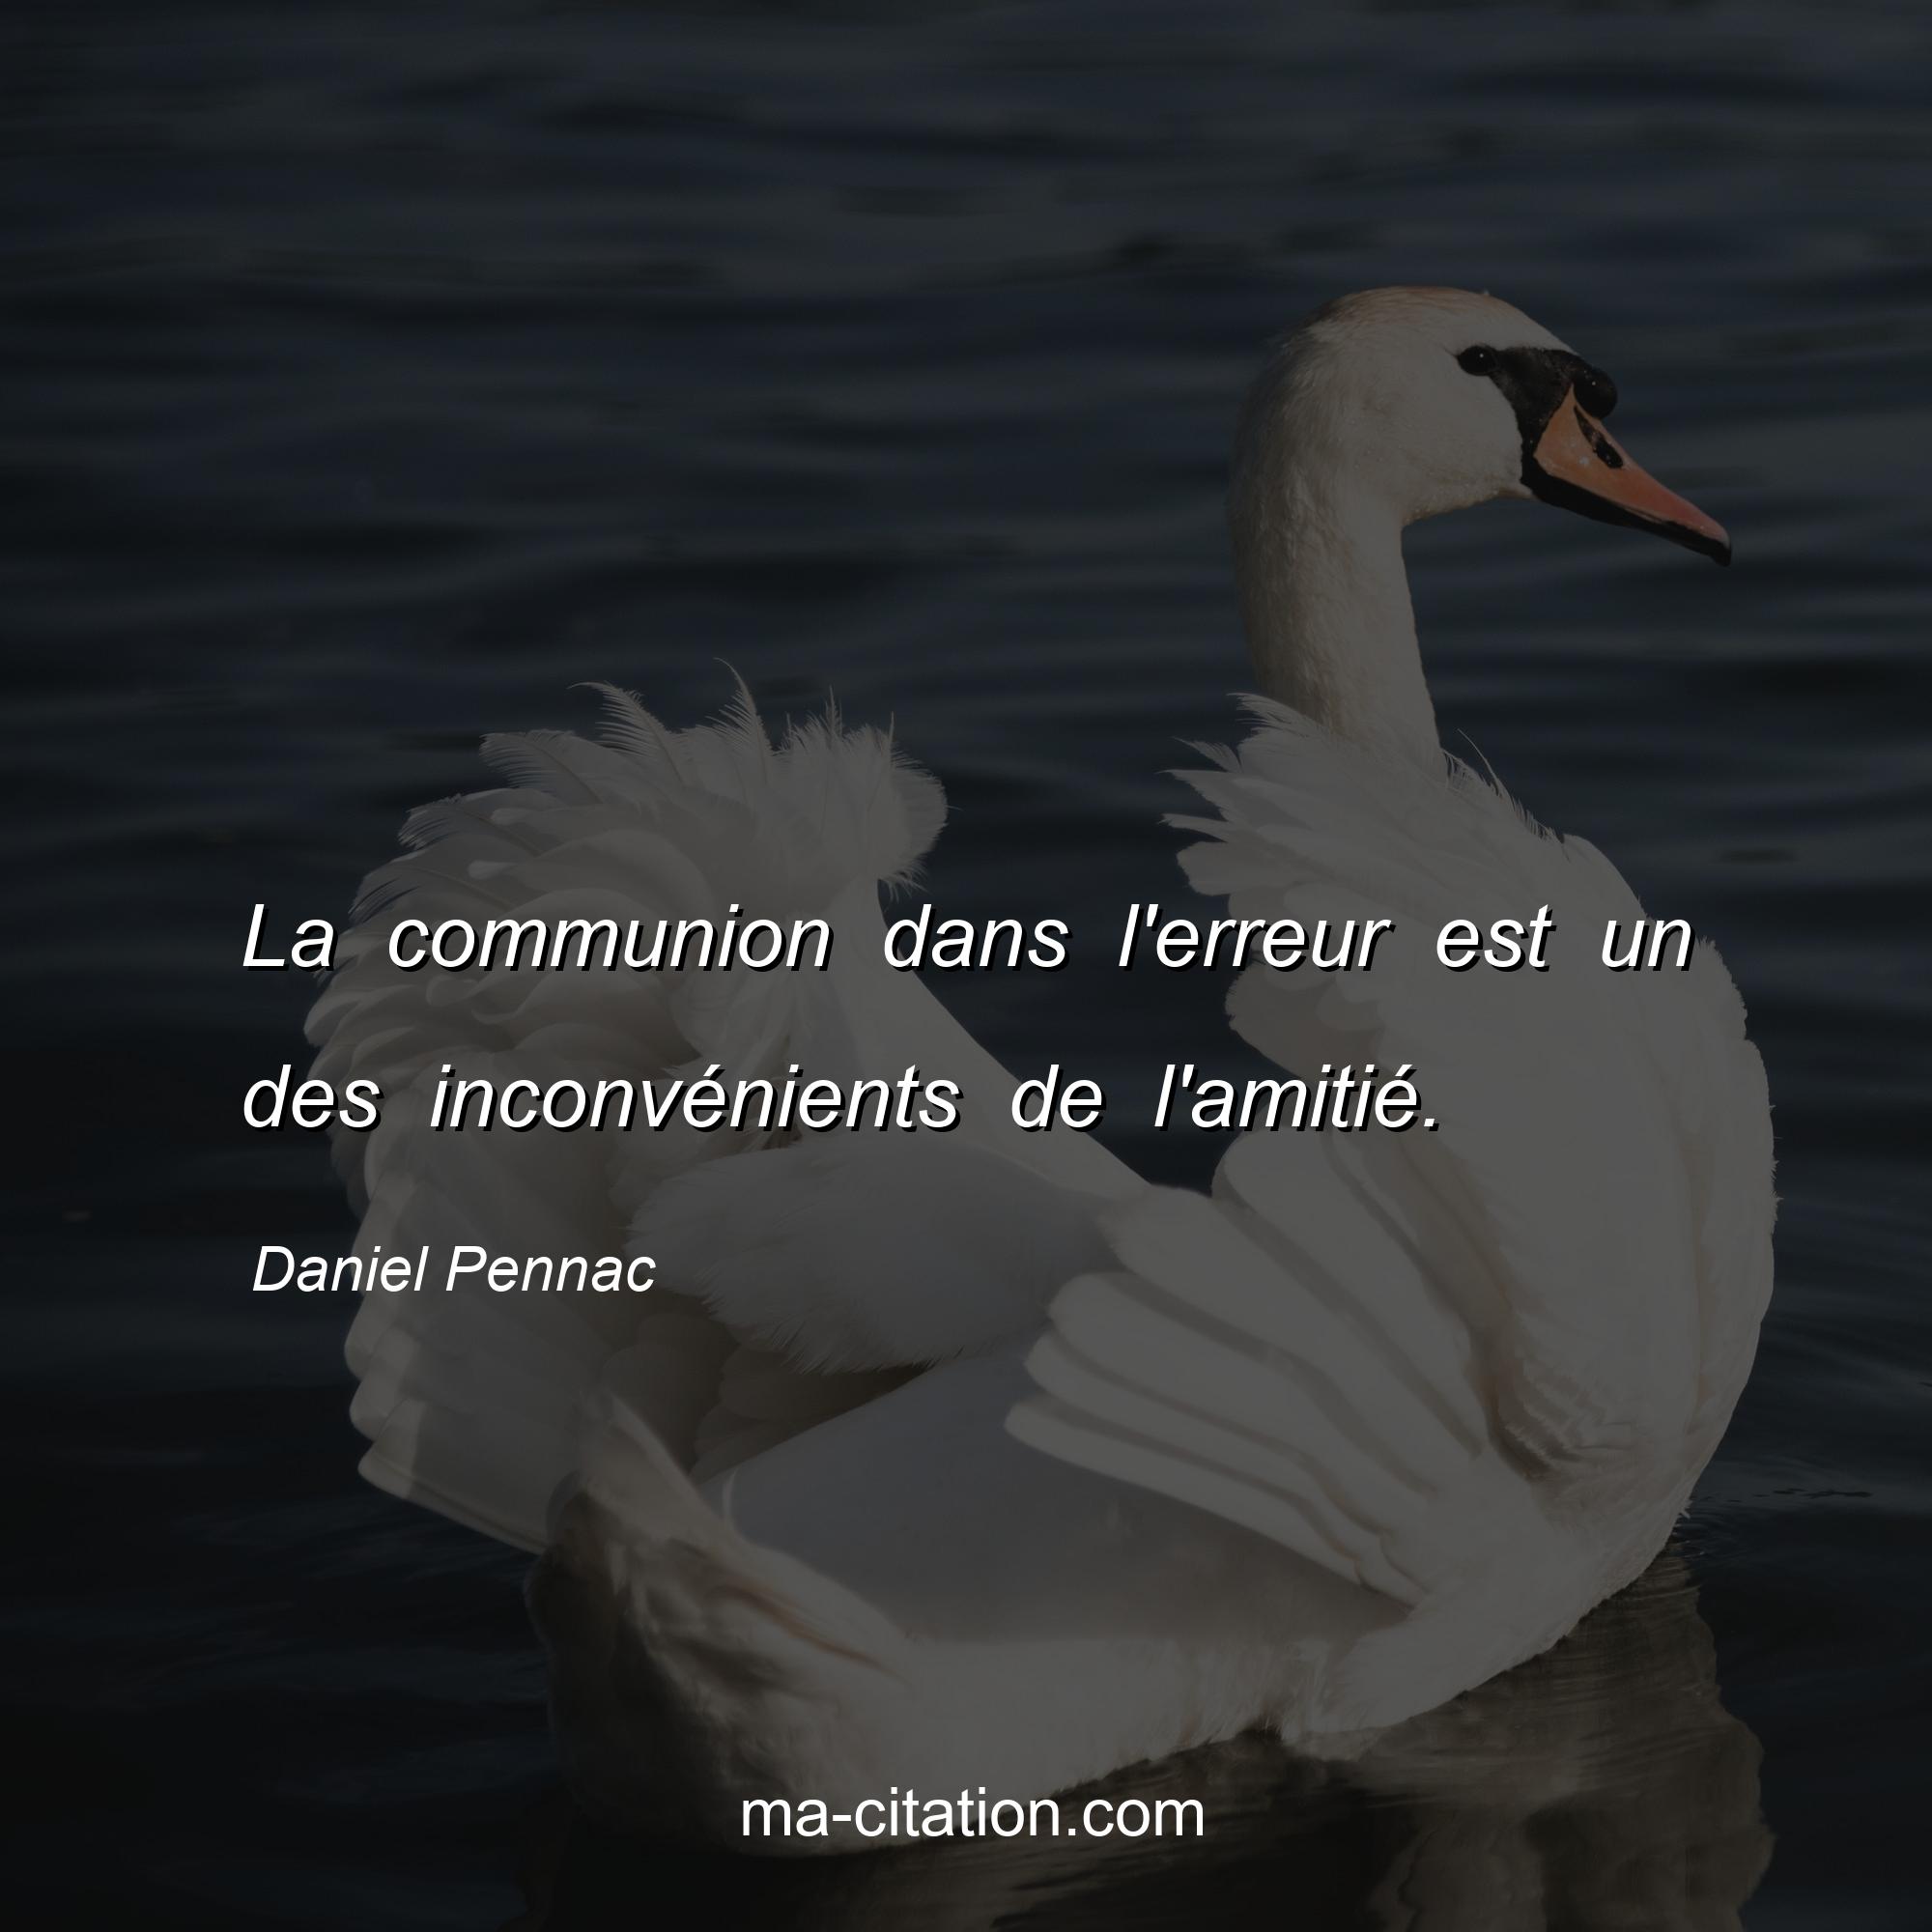 Daniel Pennac : La communion dans l'erreur est un des inconvénients de l'amitié.